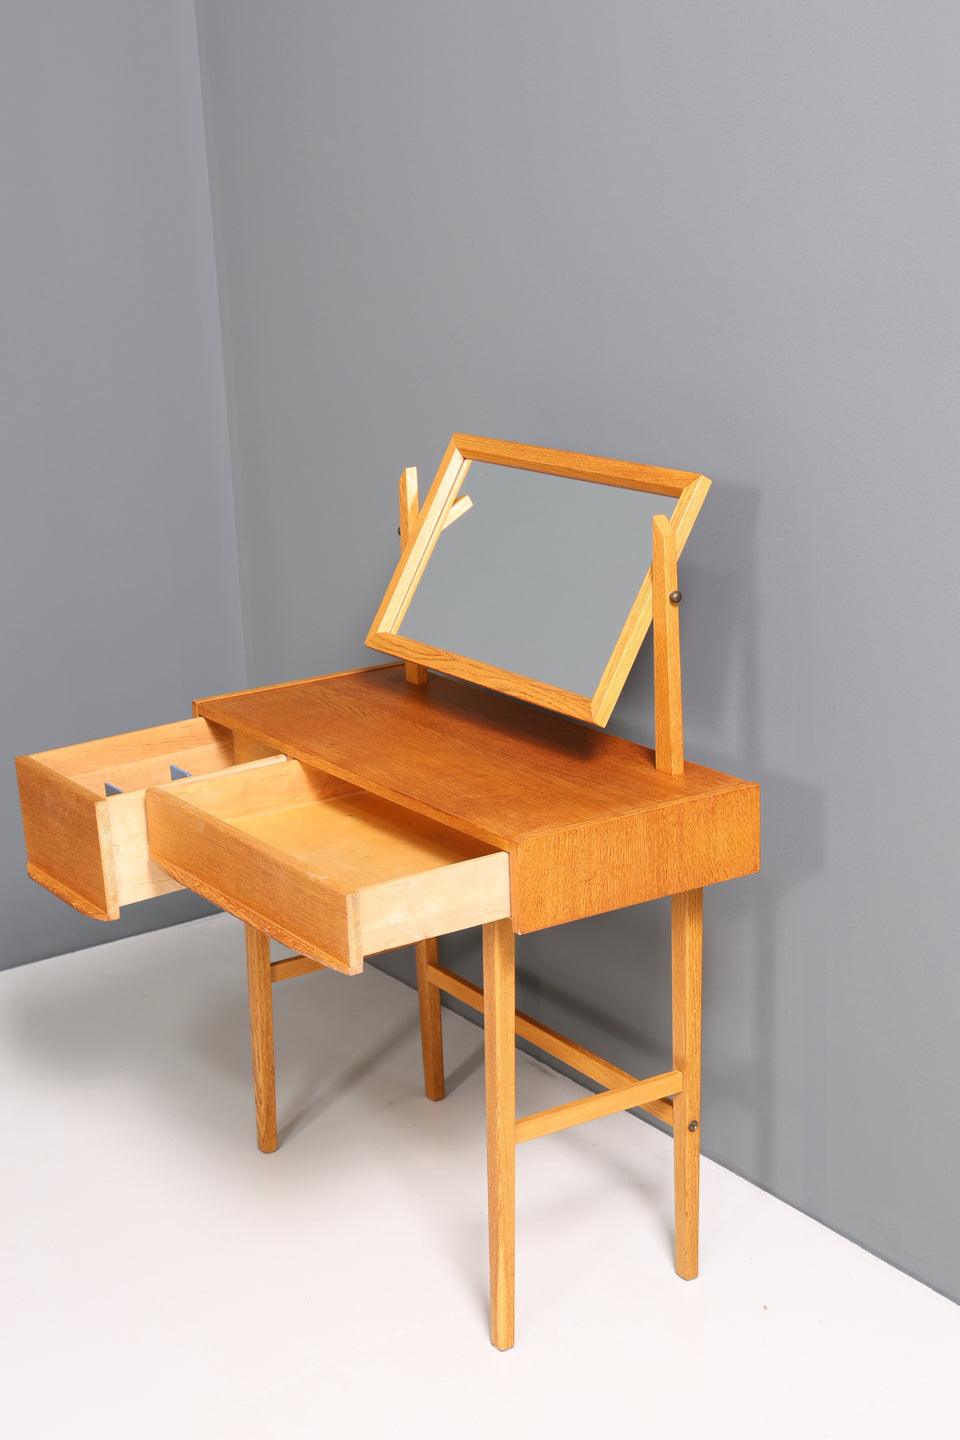 Wunderschöner Mid Century Schminktisch Danish Design Frisiertisch Retro Schreibtisch